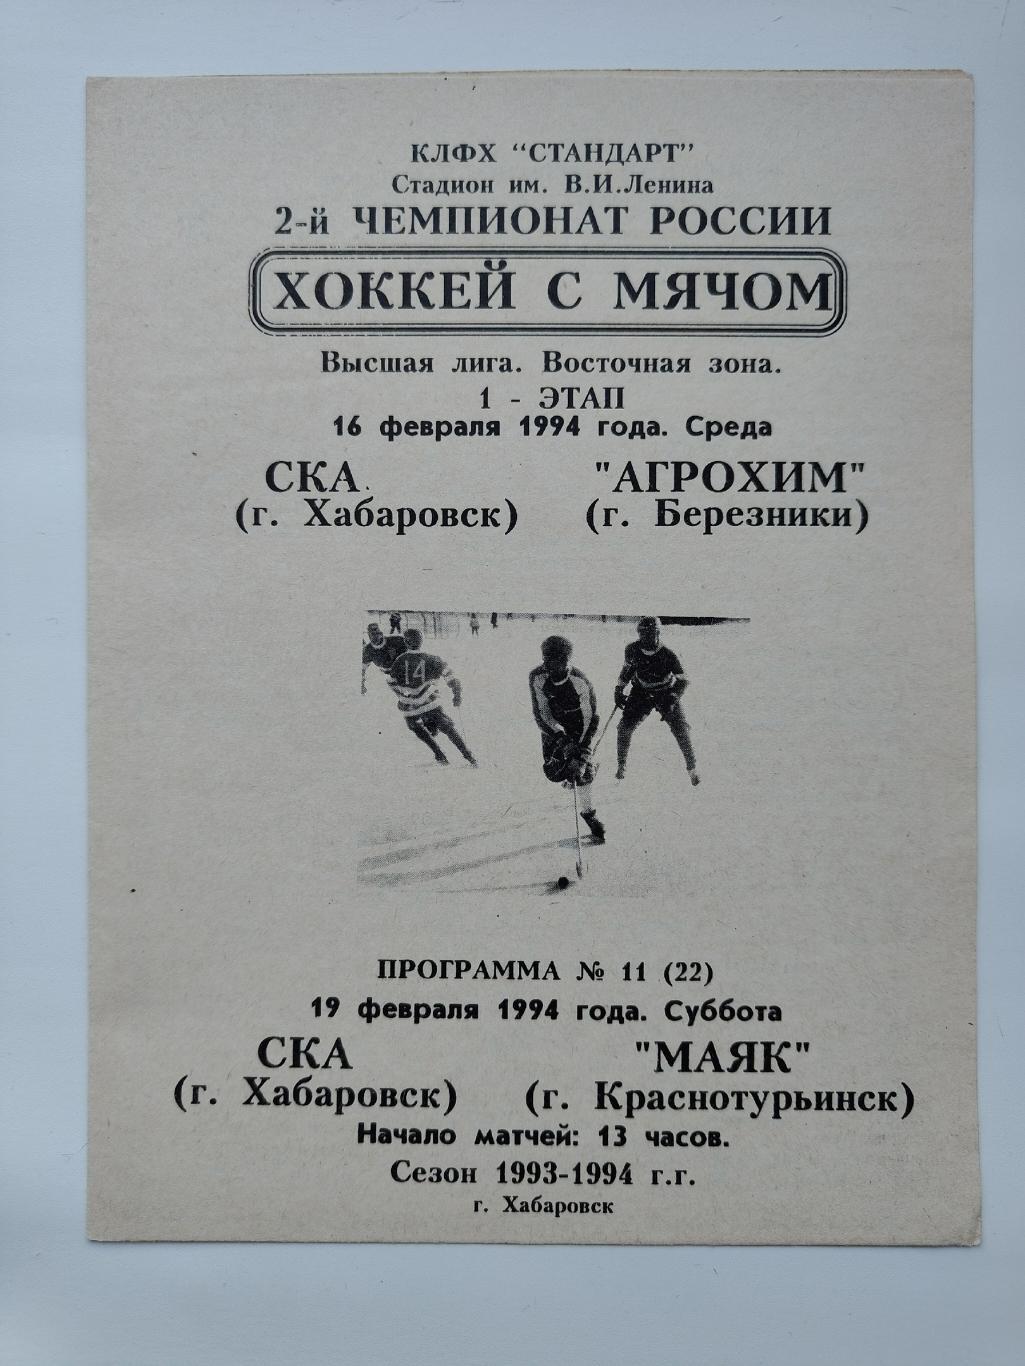 Хоккей с мячом. СКА Хабаровск - Агрохим Березники Маяк Краснотурьинск 1994